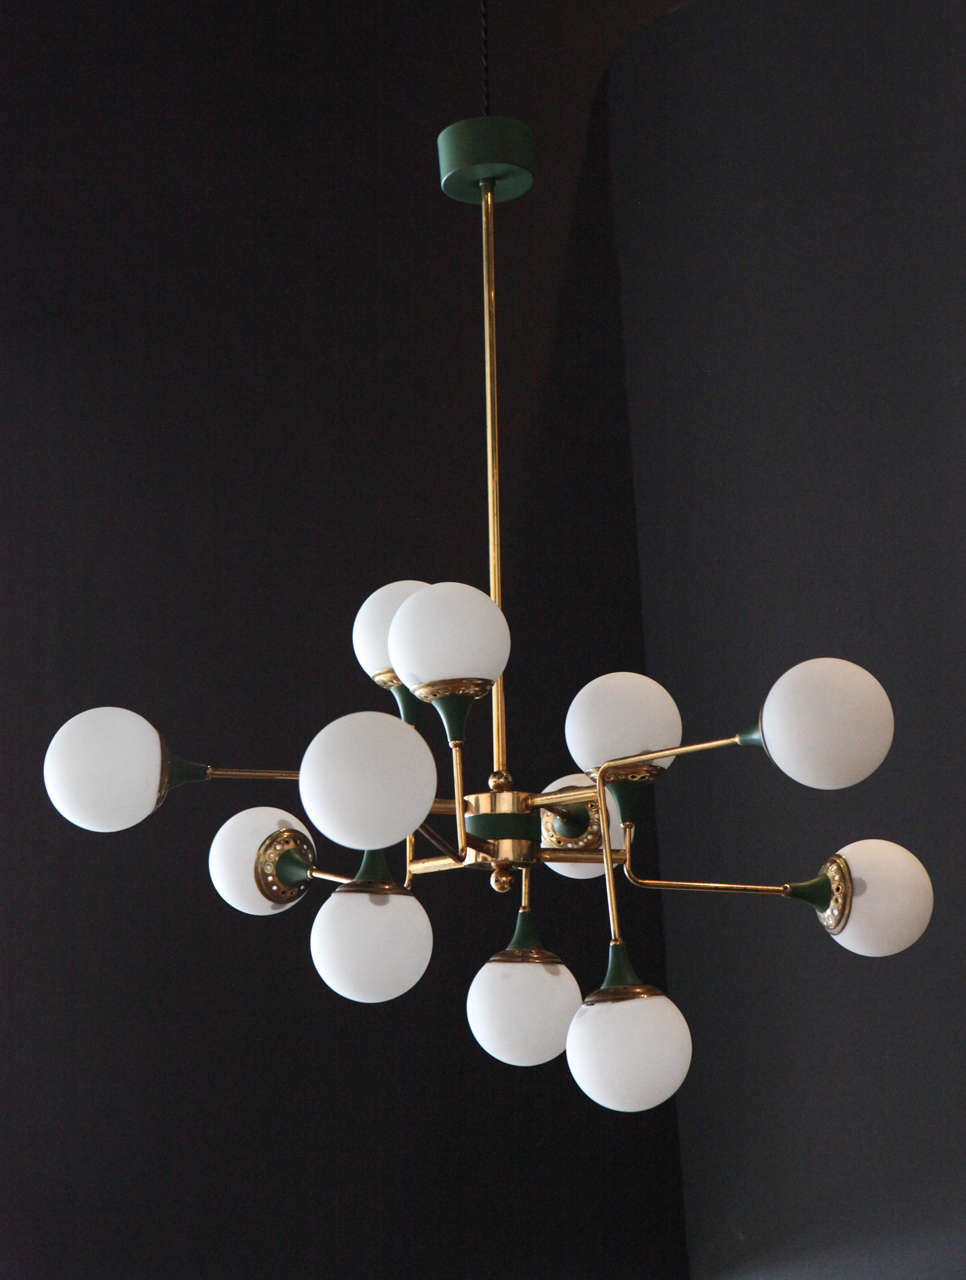 An original Stilnovo twelve globe chandelier, has been rewired for safety.